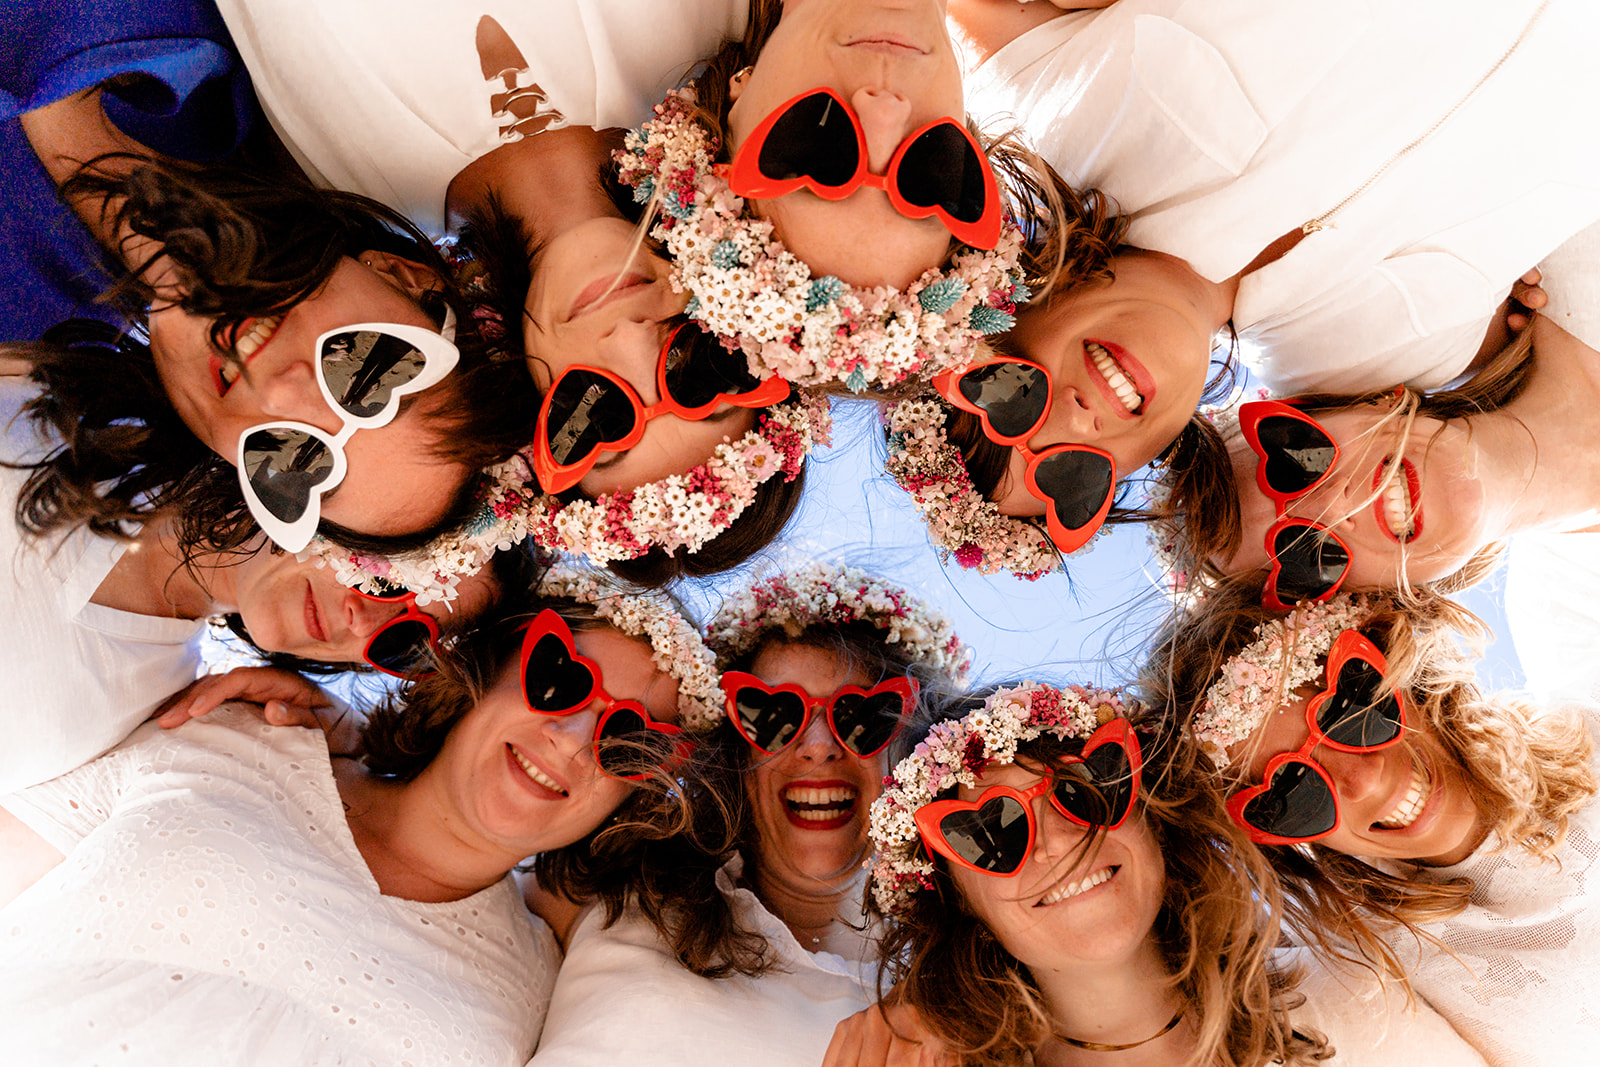 Accessoires de séance photo EVJF : lunettes de soleil assorties portées par un groupe d'amies sur la plage.